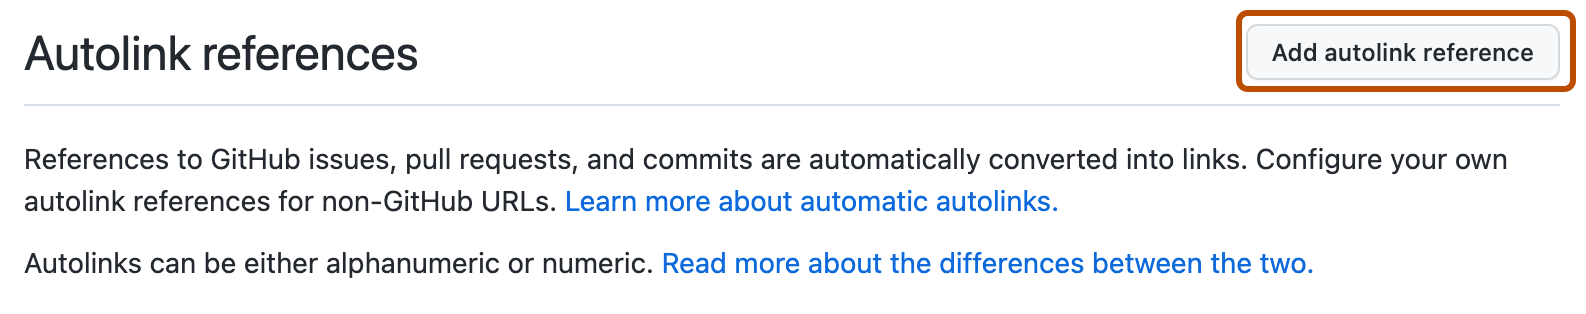 Captura de pantalla de la página "Referencias de vínculo automático". El botón "Agregar referencia de vínculo automático" está resaltado por un contorno naranja oscuro.